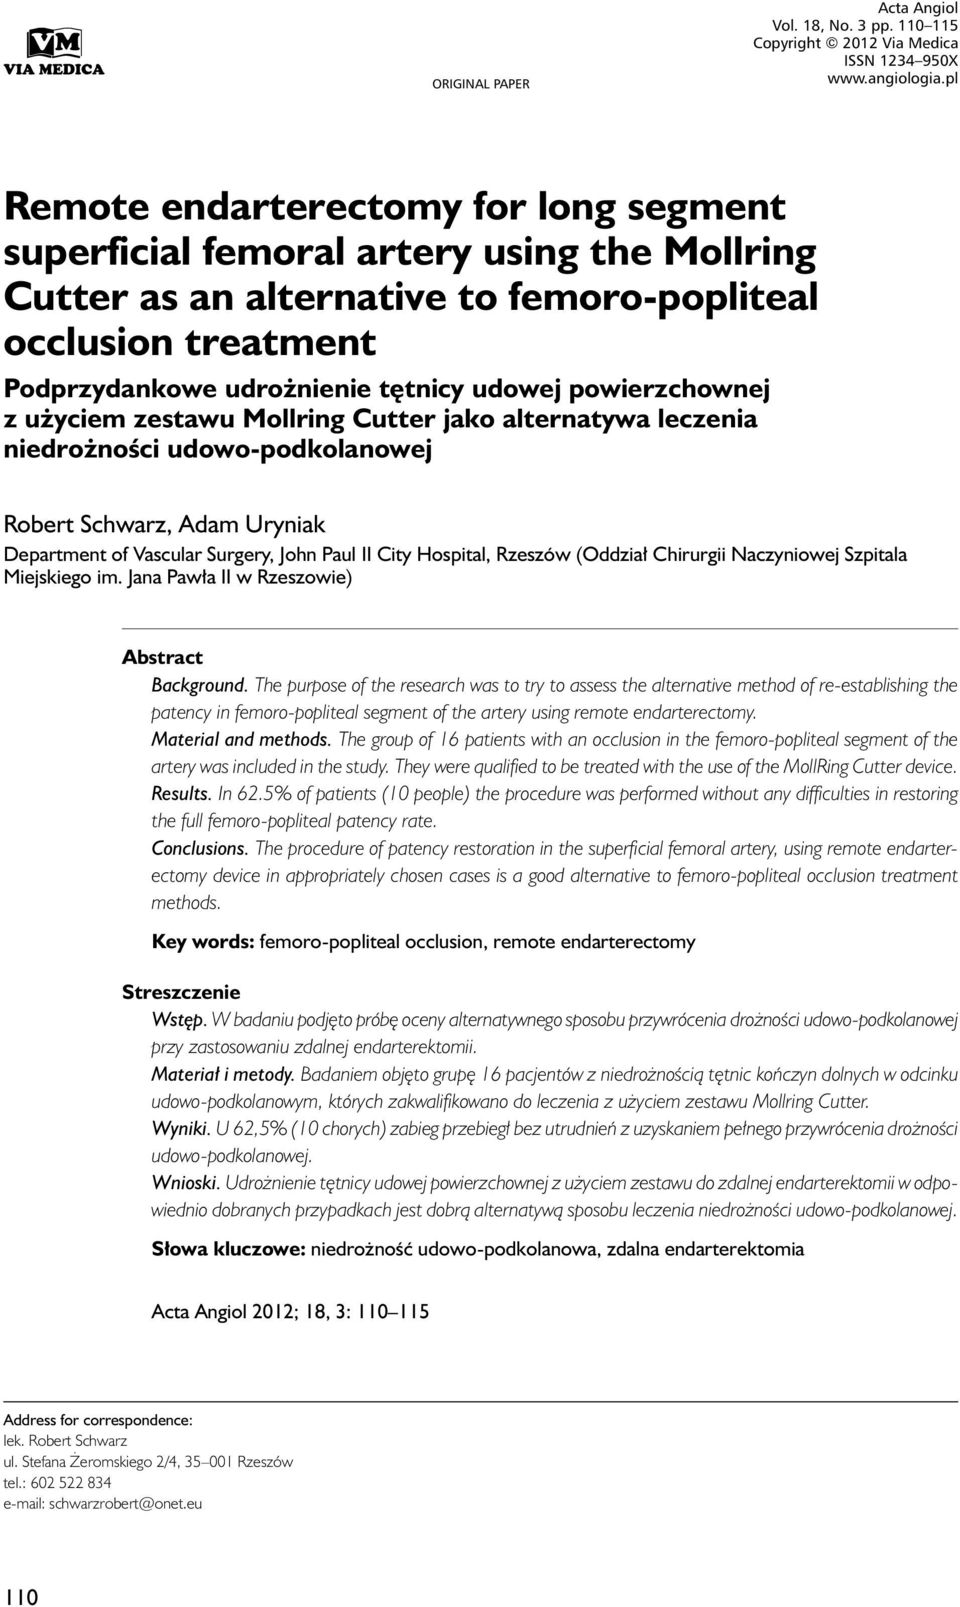 Podprzydankowe udrożnienie tętnicy udowej powierzchownej z użyciem zestawu Mollring Cutter jako alternatywa leczenia niedrożności udowo-podkolanowej Robert Schwarz, Adam Uryniak Department of